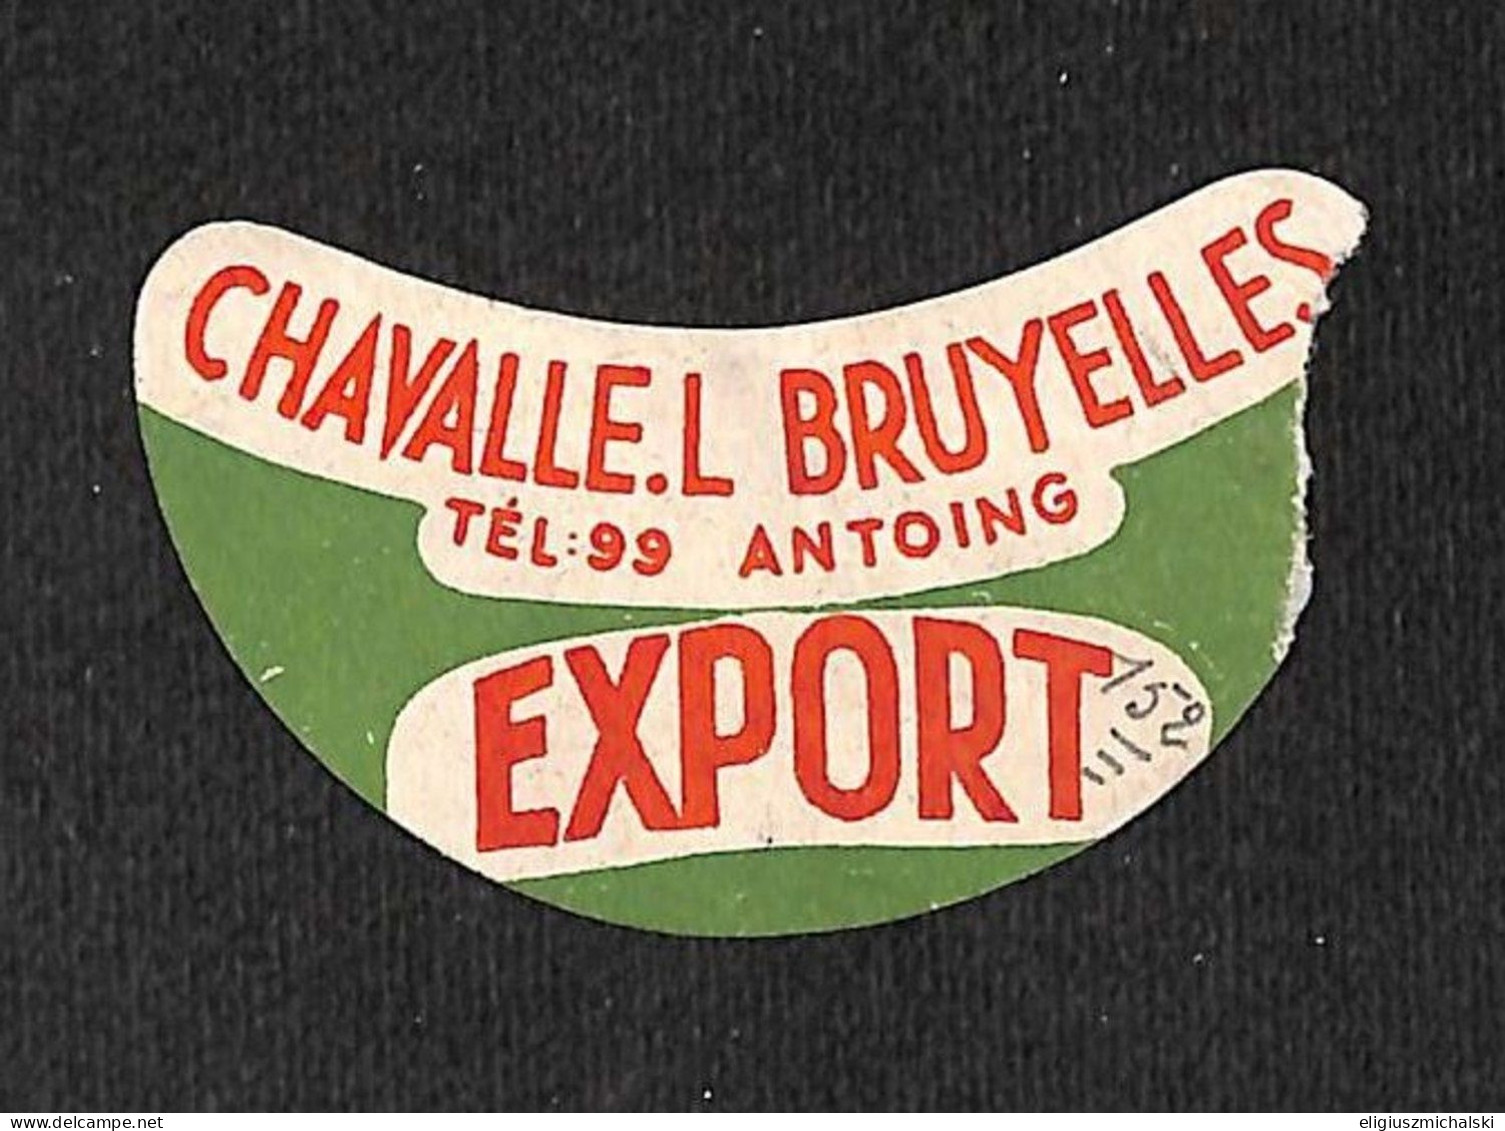 Antoing - Chavalle L. Bruyelles Export Découpe !!! (vente Unique) - Birra